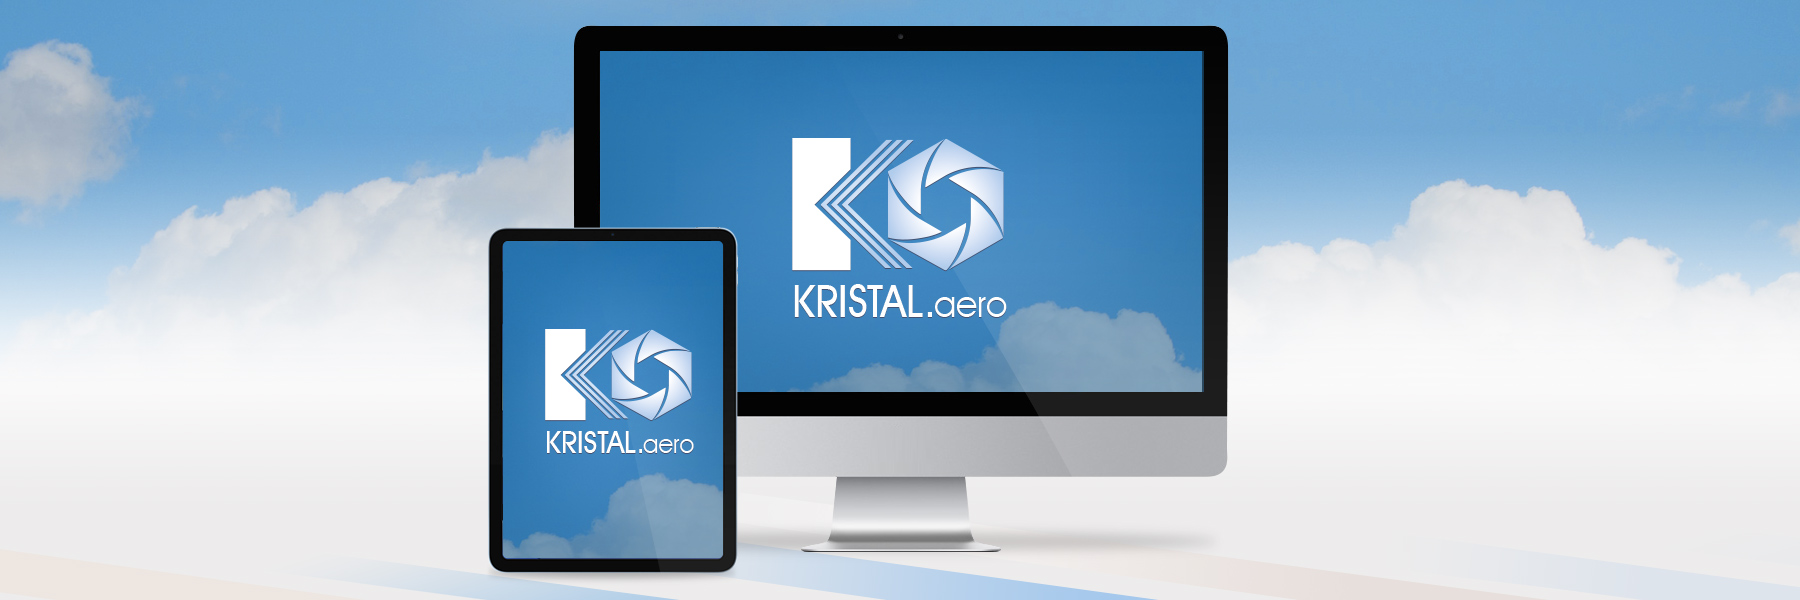 Kristal Aero logo